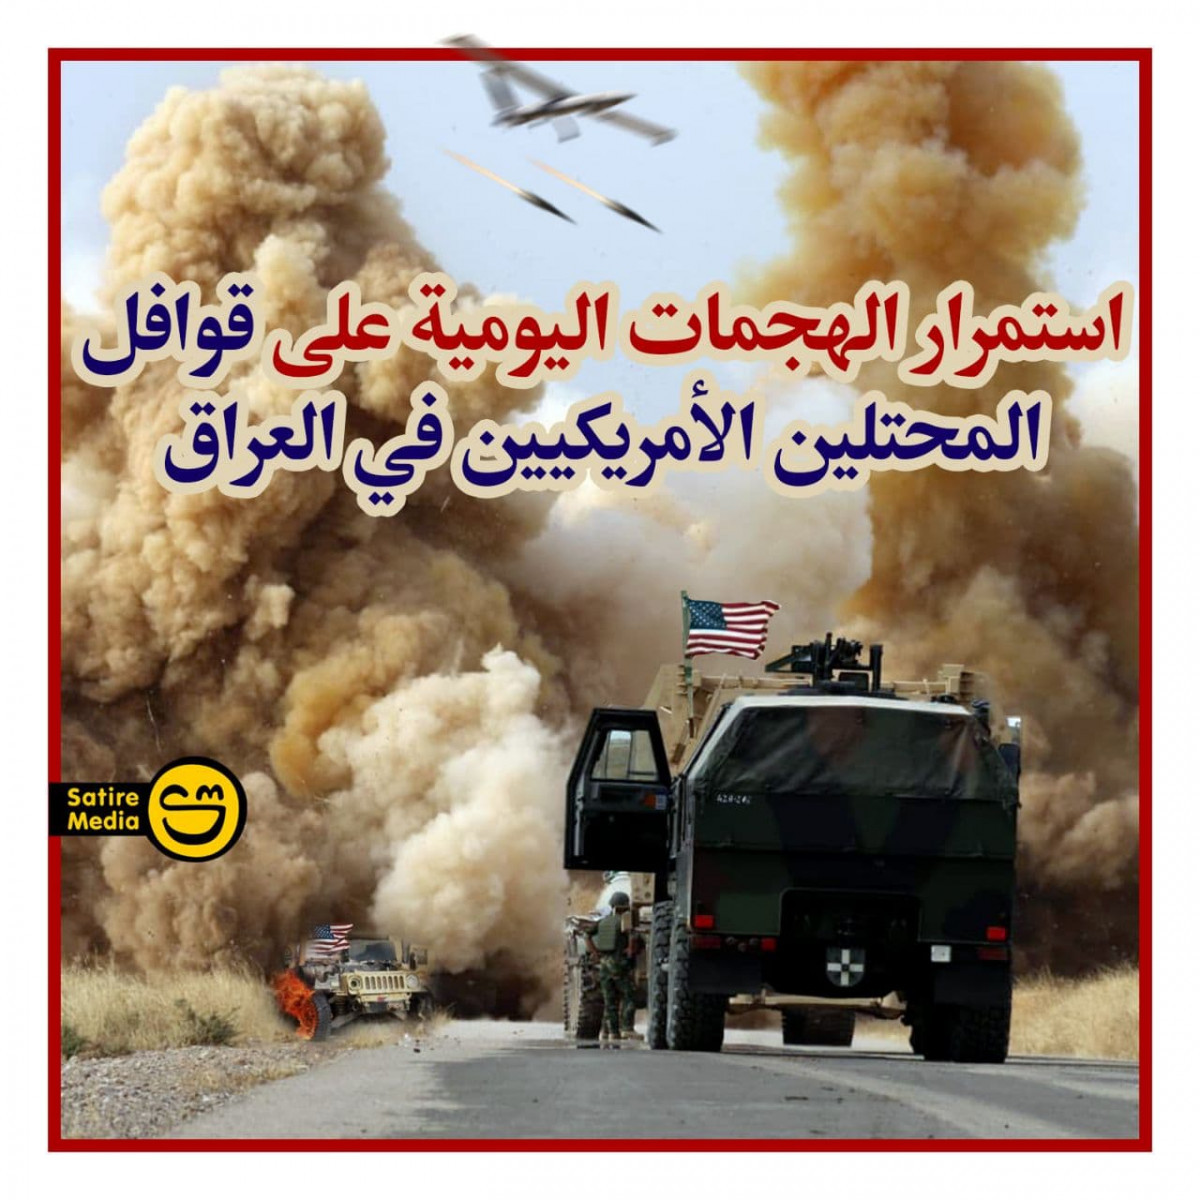 استمرار الهجمات اليومية على قوافل المحتلين الأمريكيين في العراق